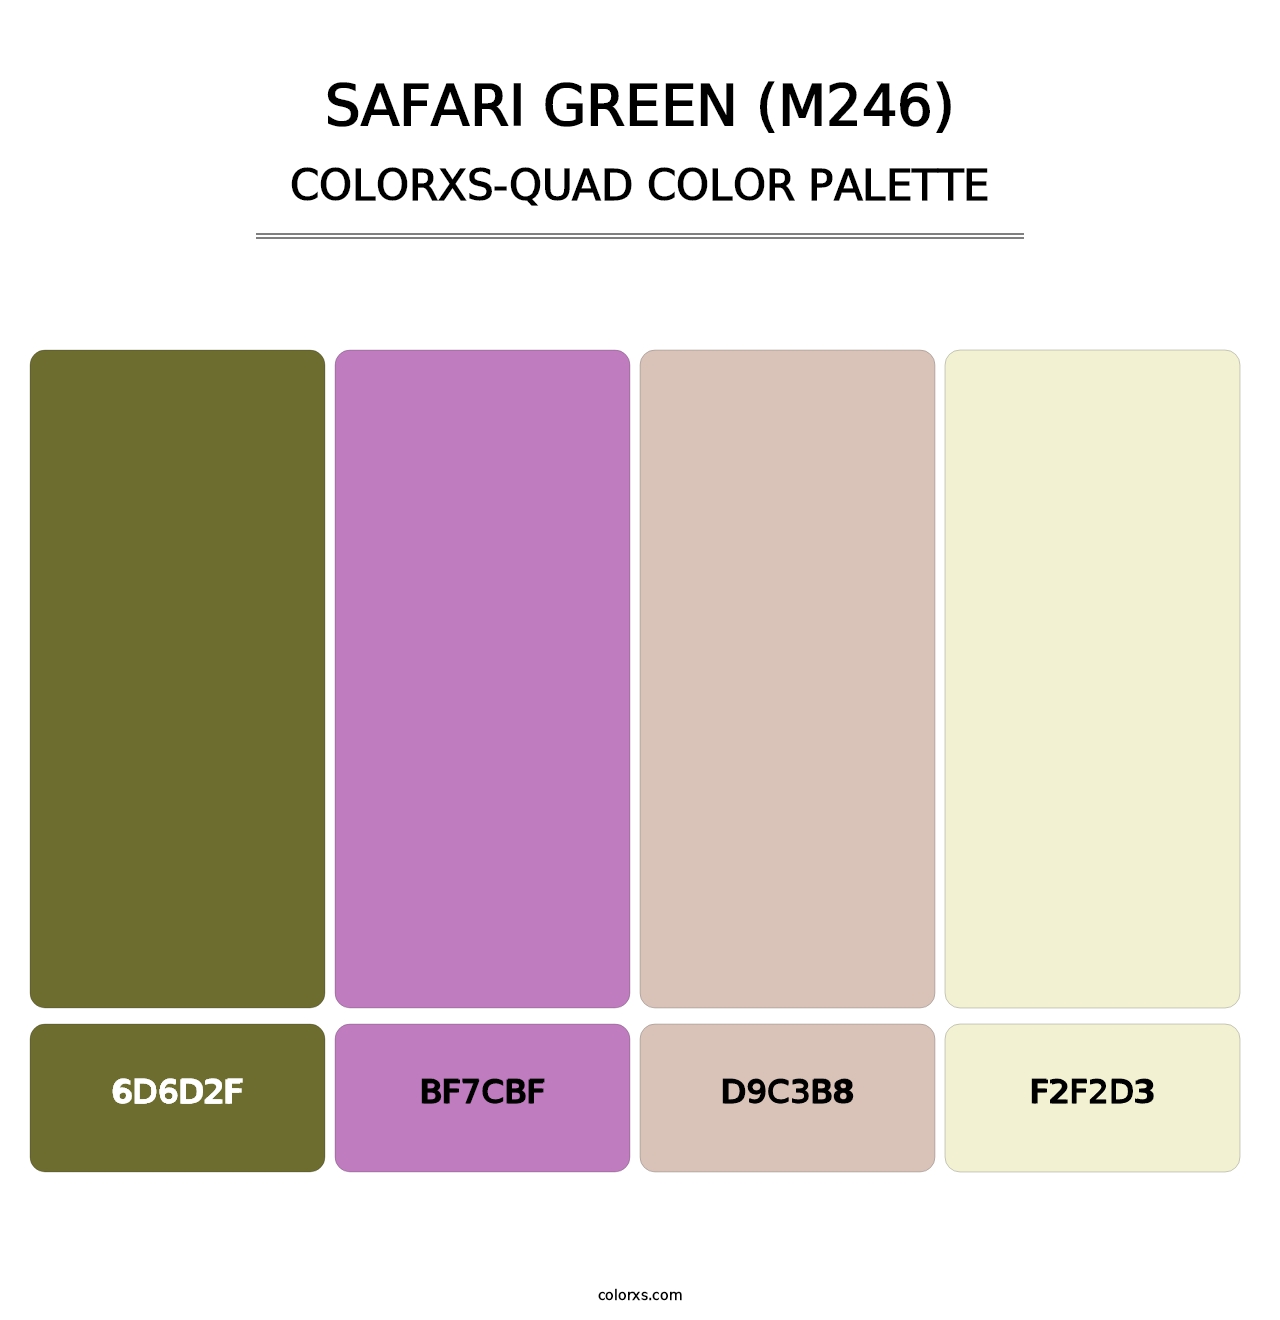 Safari Green (M246) - Colorxs Quad Palette